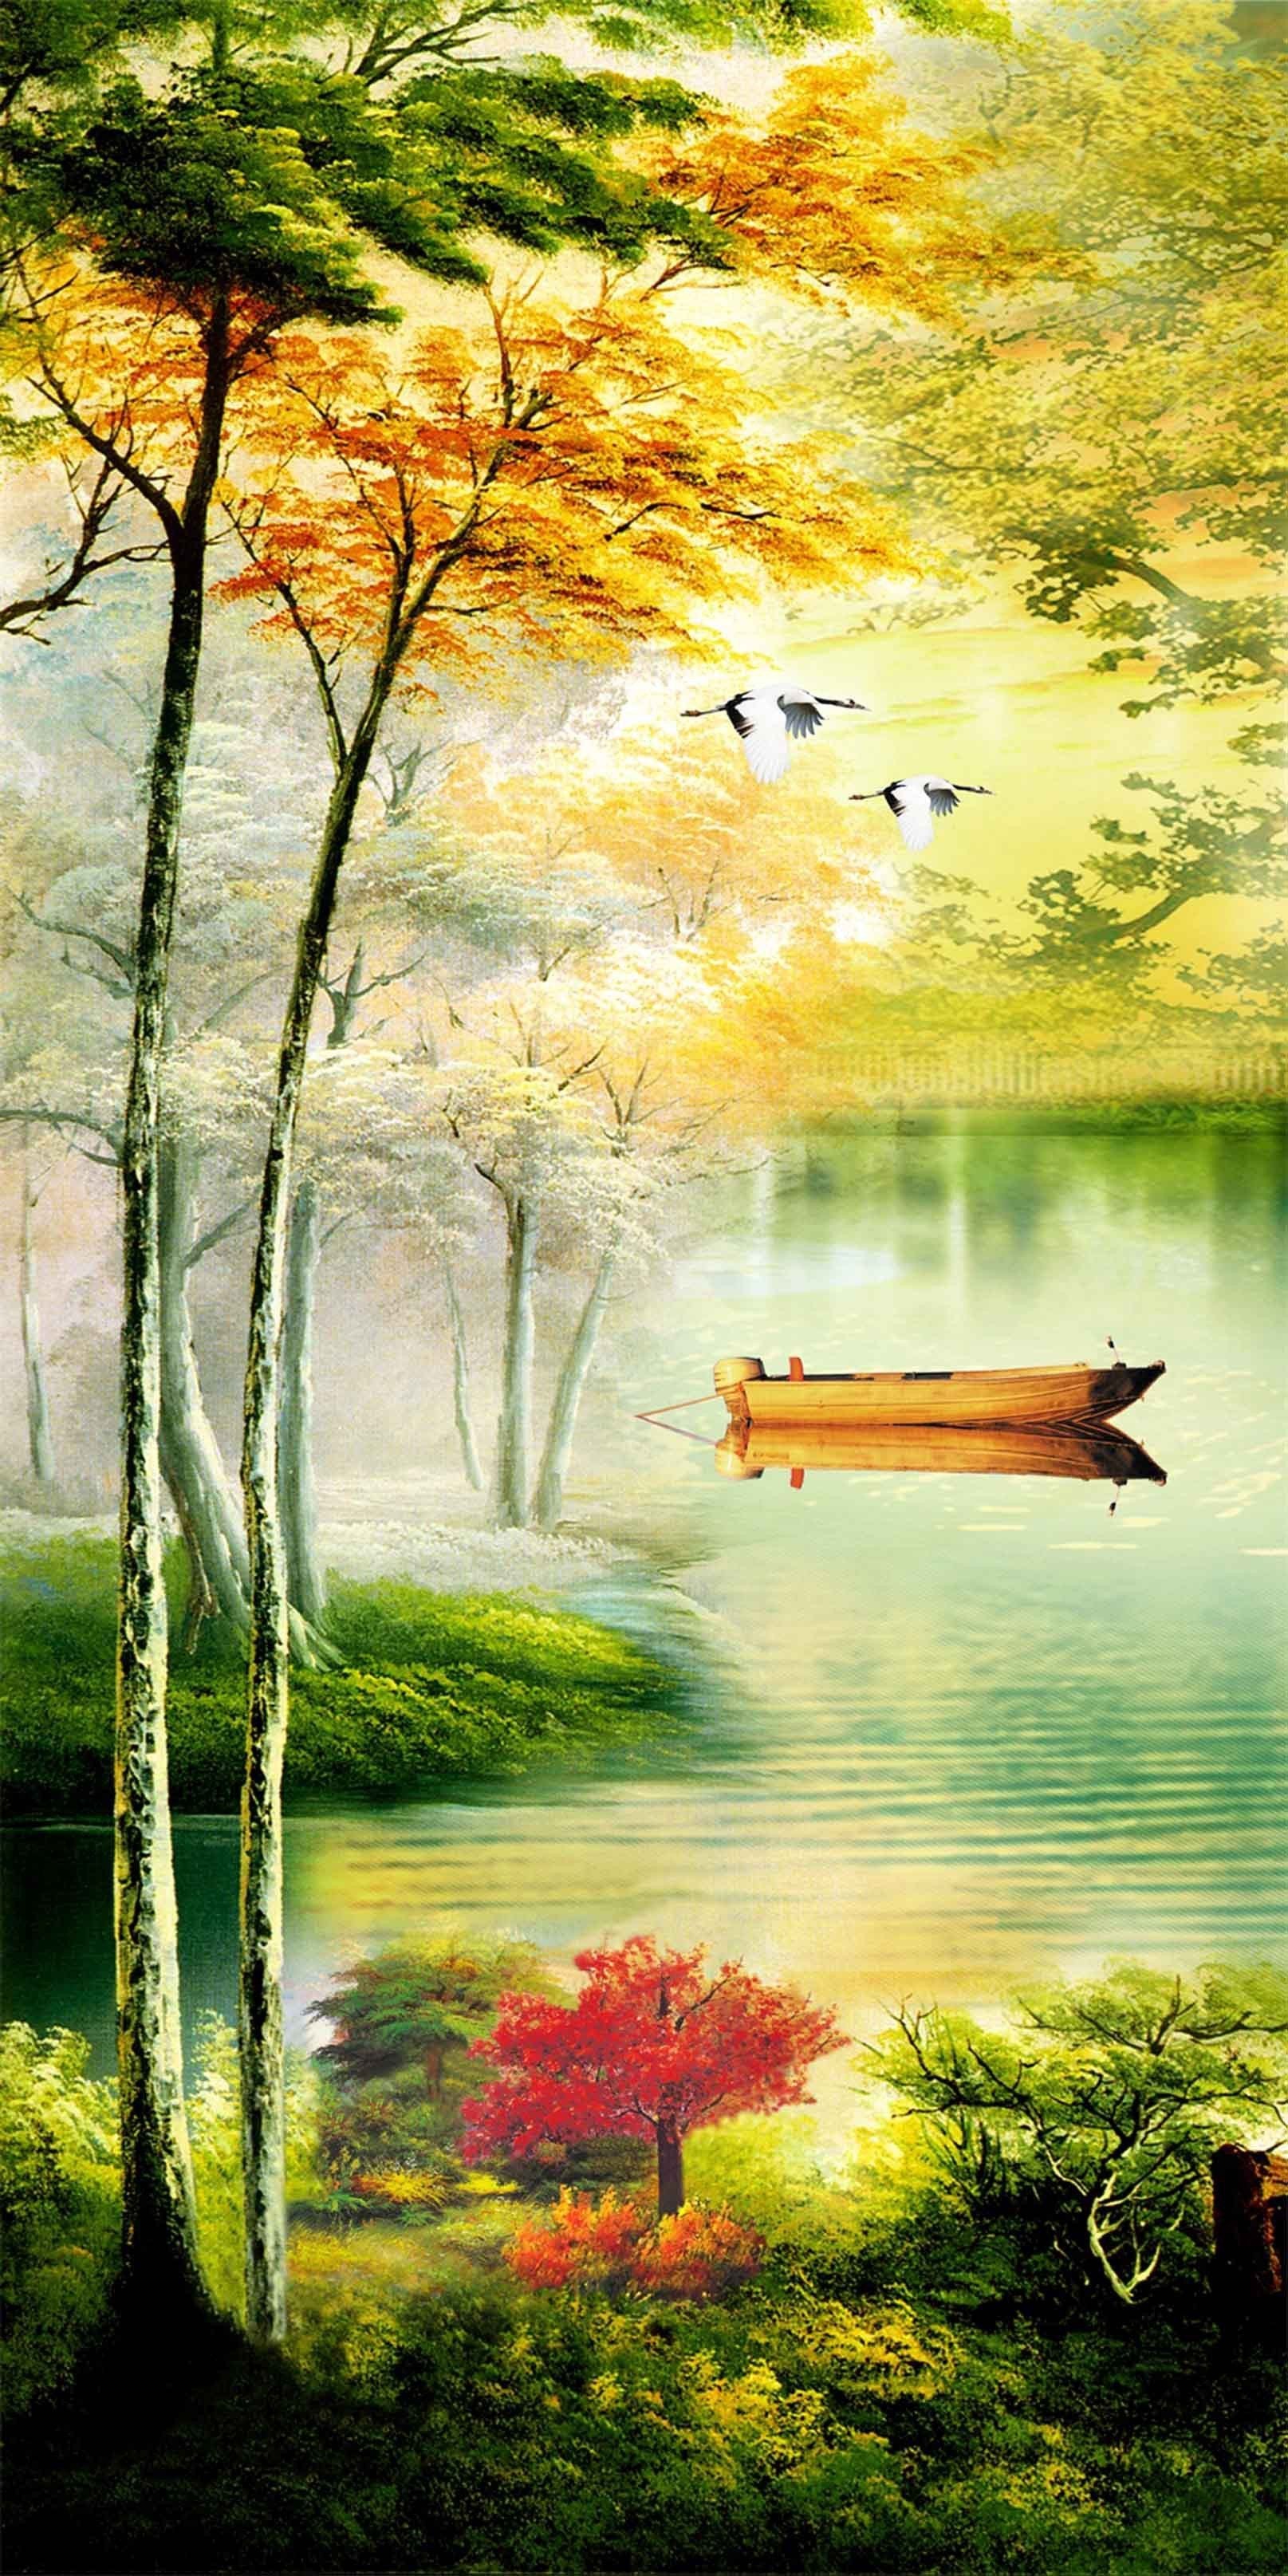 3D Peaceful Lake 1459 Stair Risers Wallpaper AJ Wallpaper 